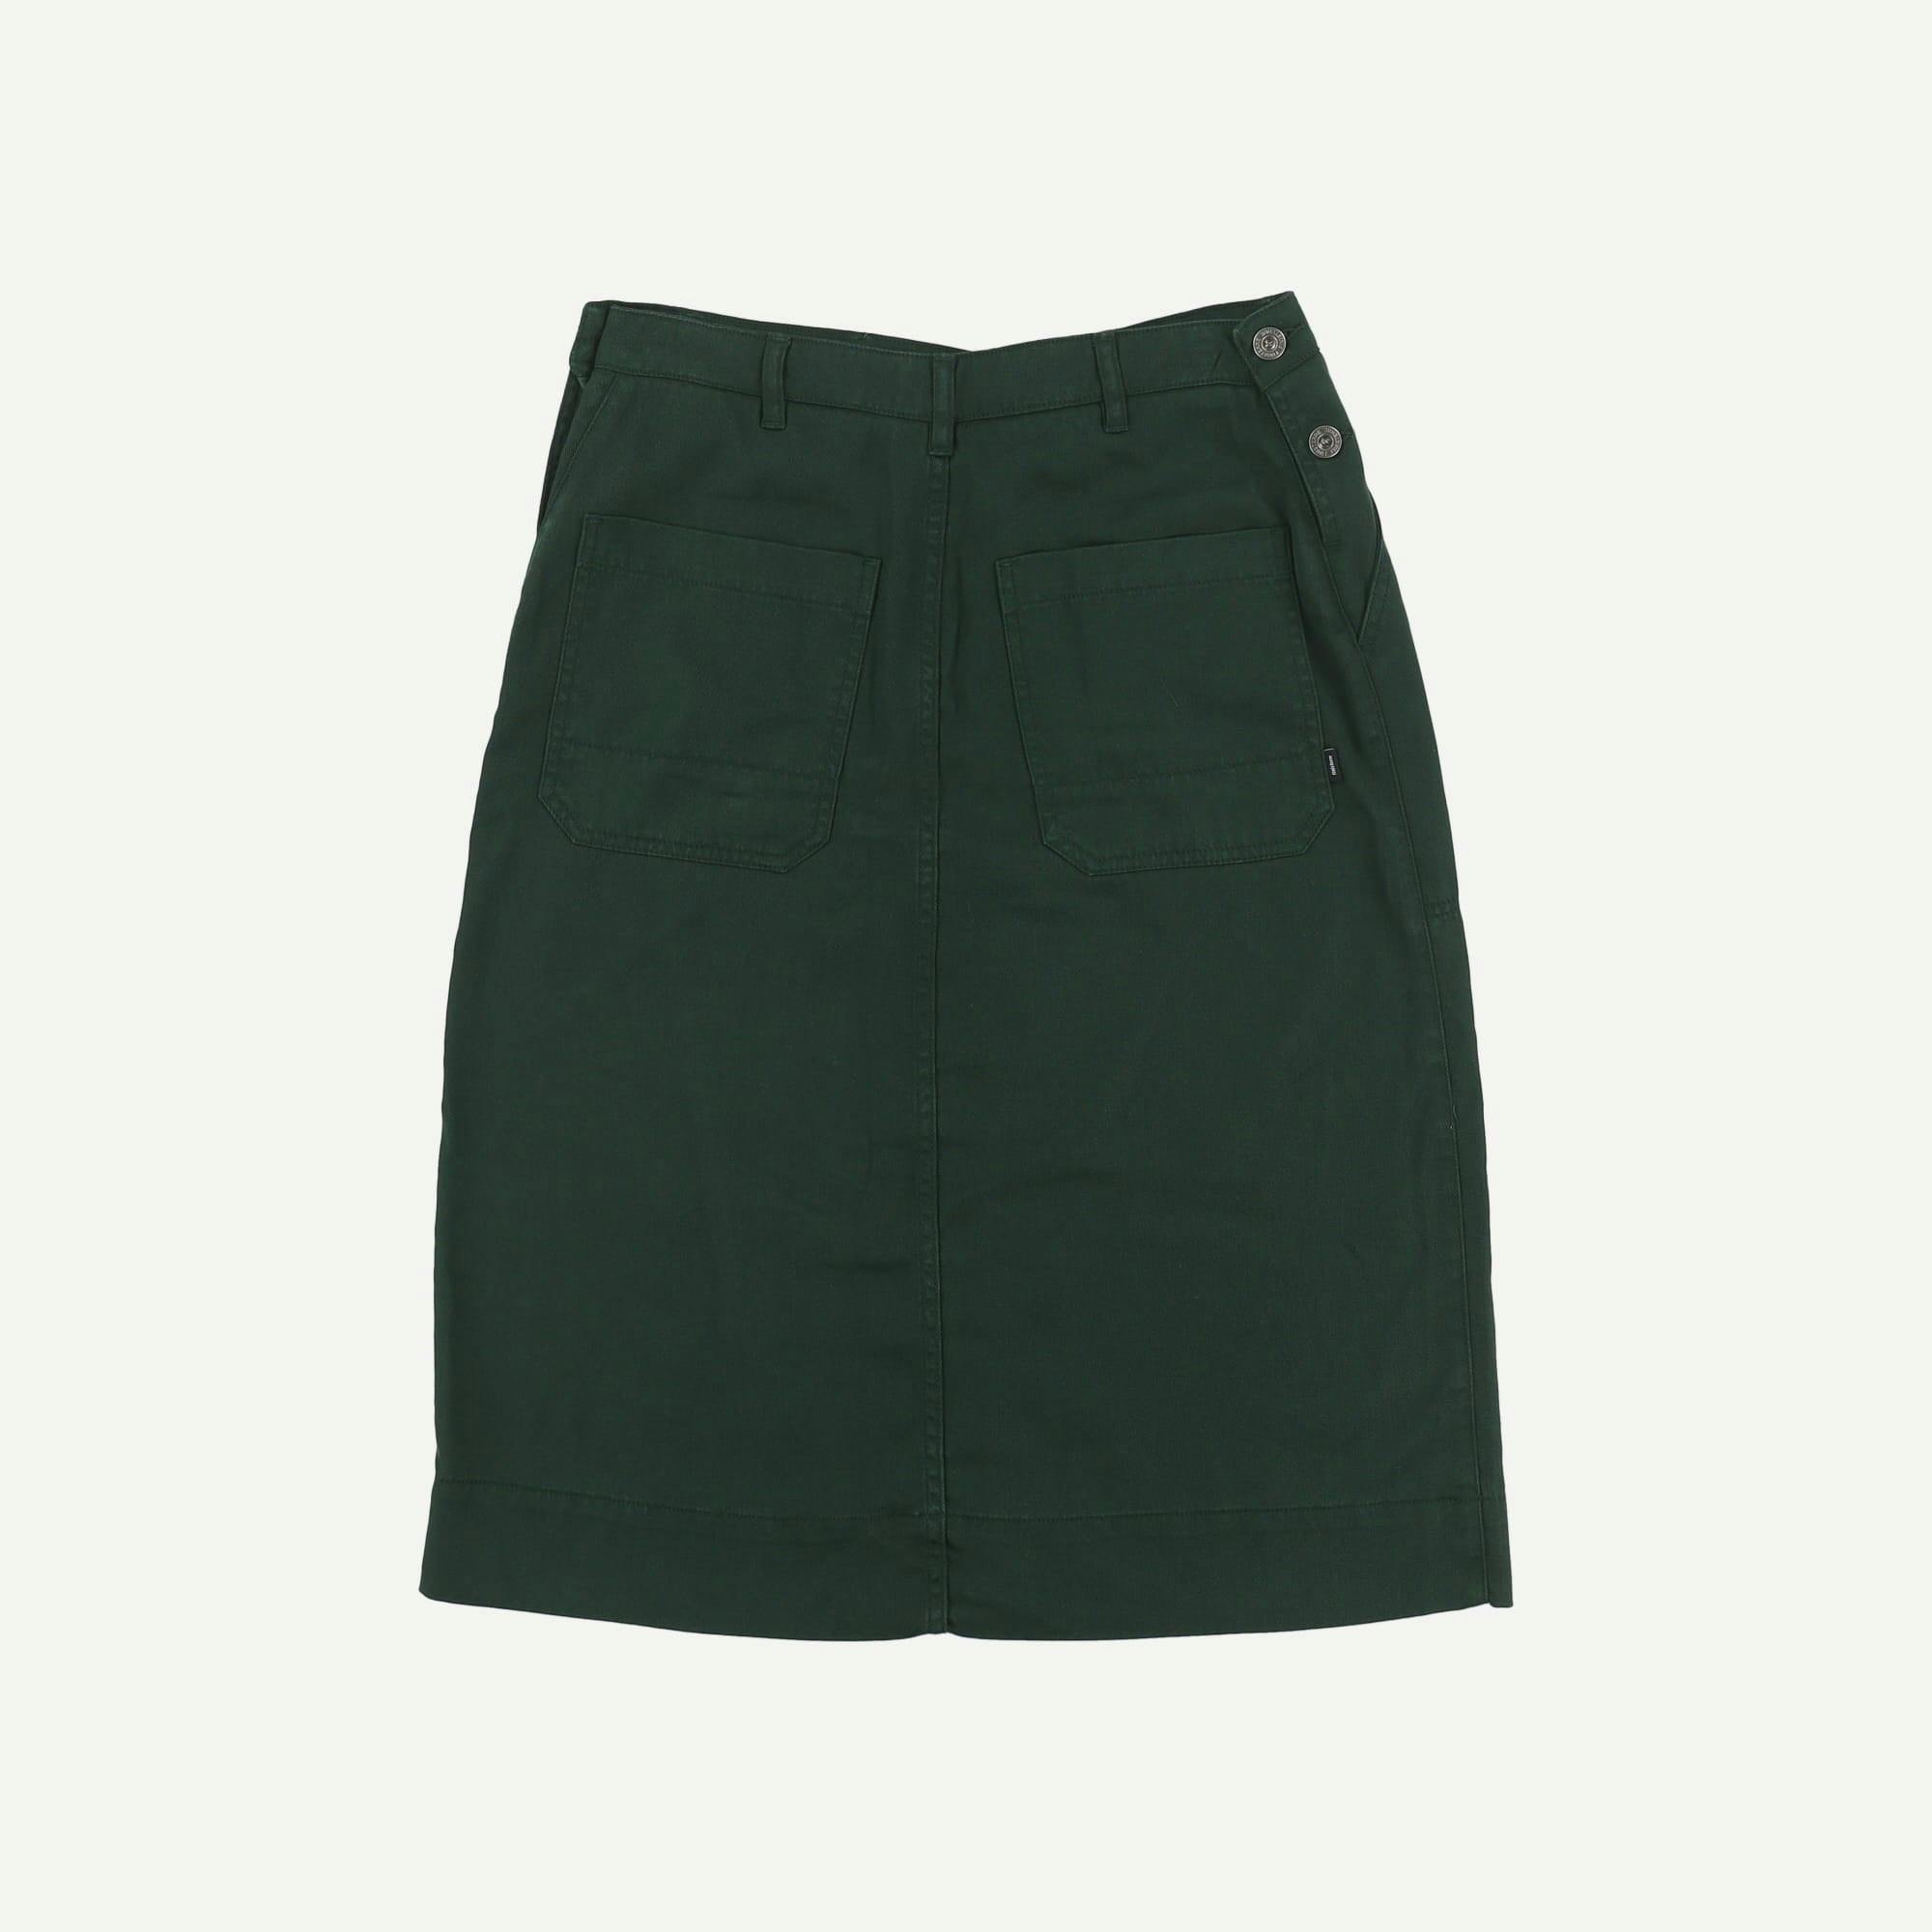 Finisterre Brand new Green Skirt